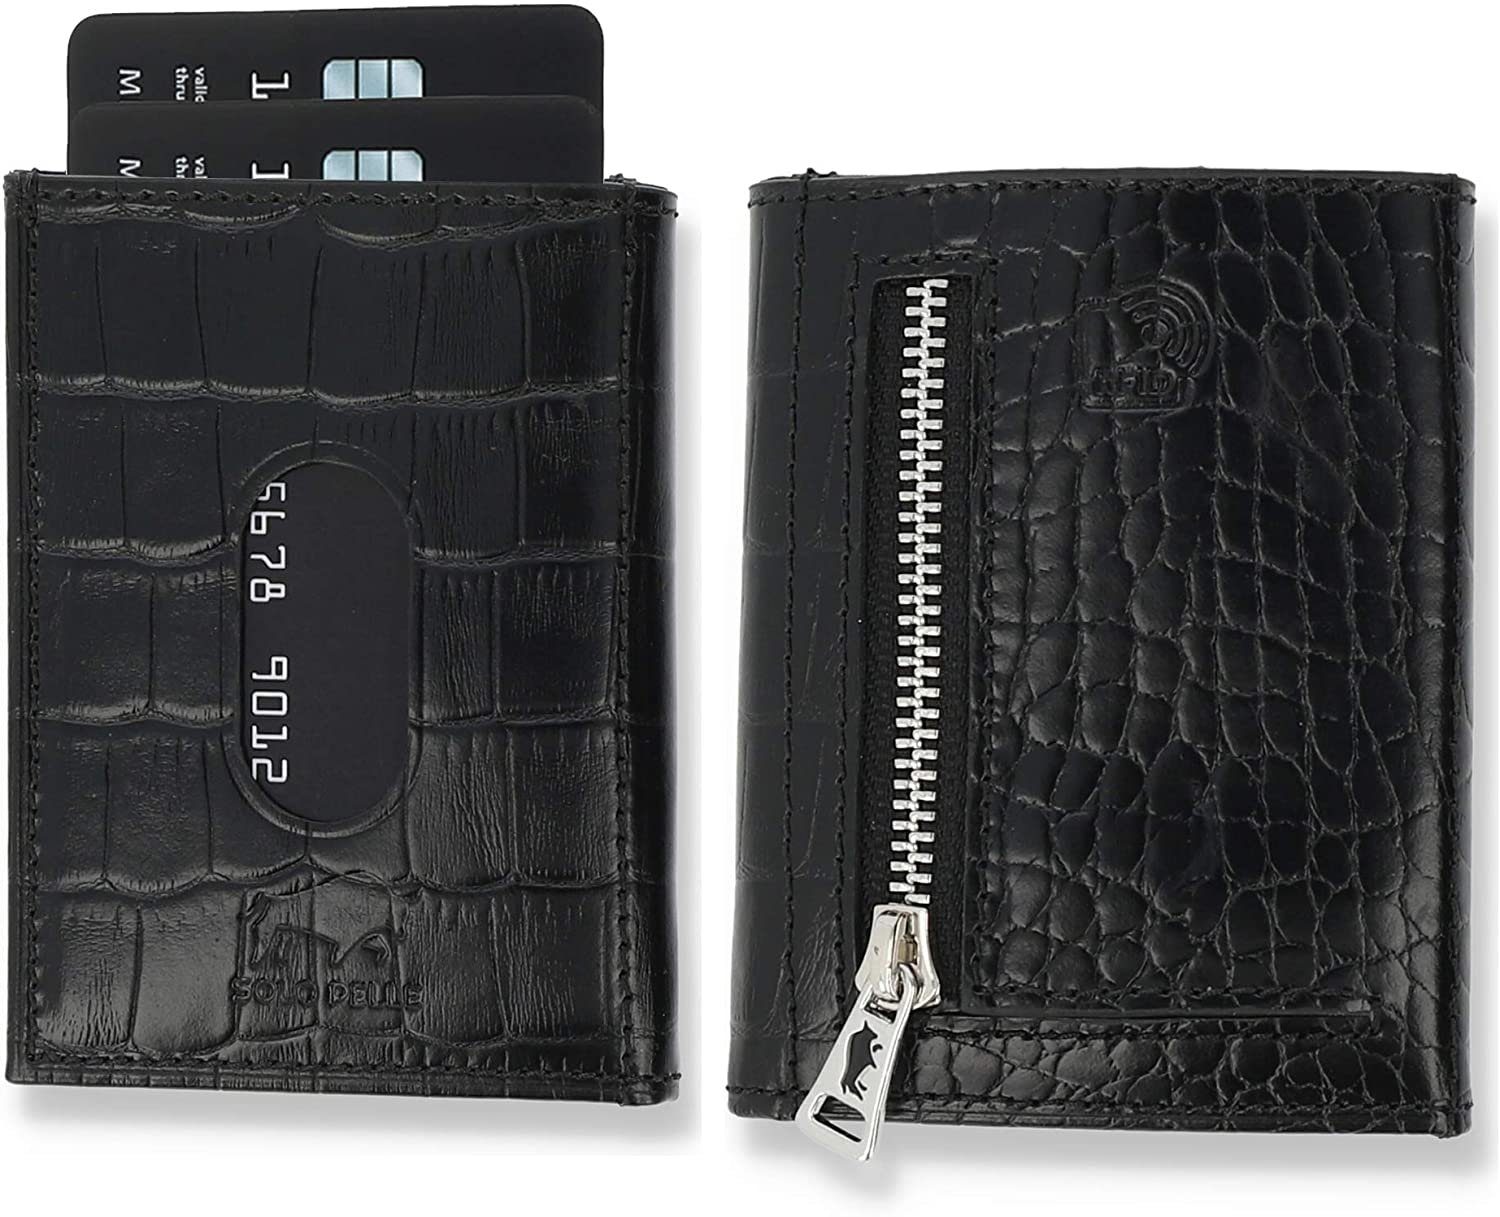 Solo Pelle Brieftasche Slim Wallet mit Münzfach [12 Karten] Slimwallet Riga [RFID-Schutz], echt Leder, RFID Schutz, Macde in Europe